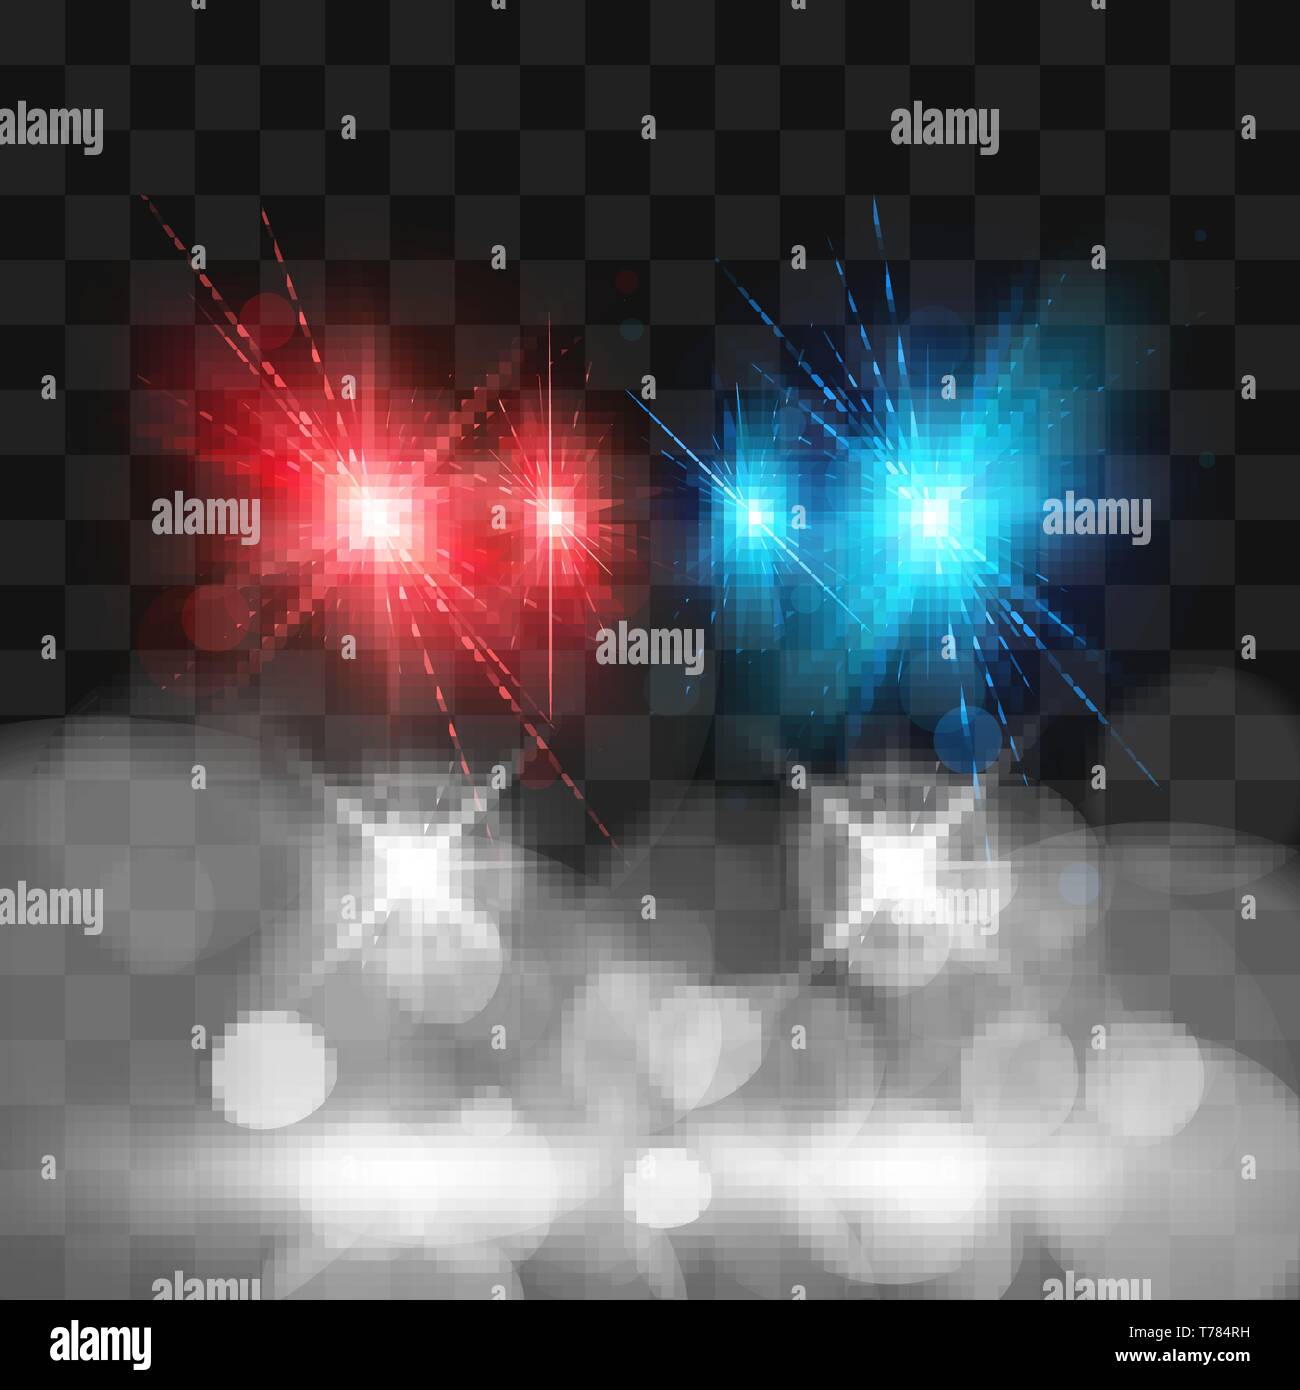 Vorlage von Siren Polizei Auto. Scheinwerfer und Blinker roten und blauen Farben. Vector Illustration isoliert auf transparentem Hintergrund Stock Vektor